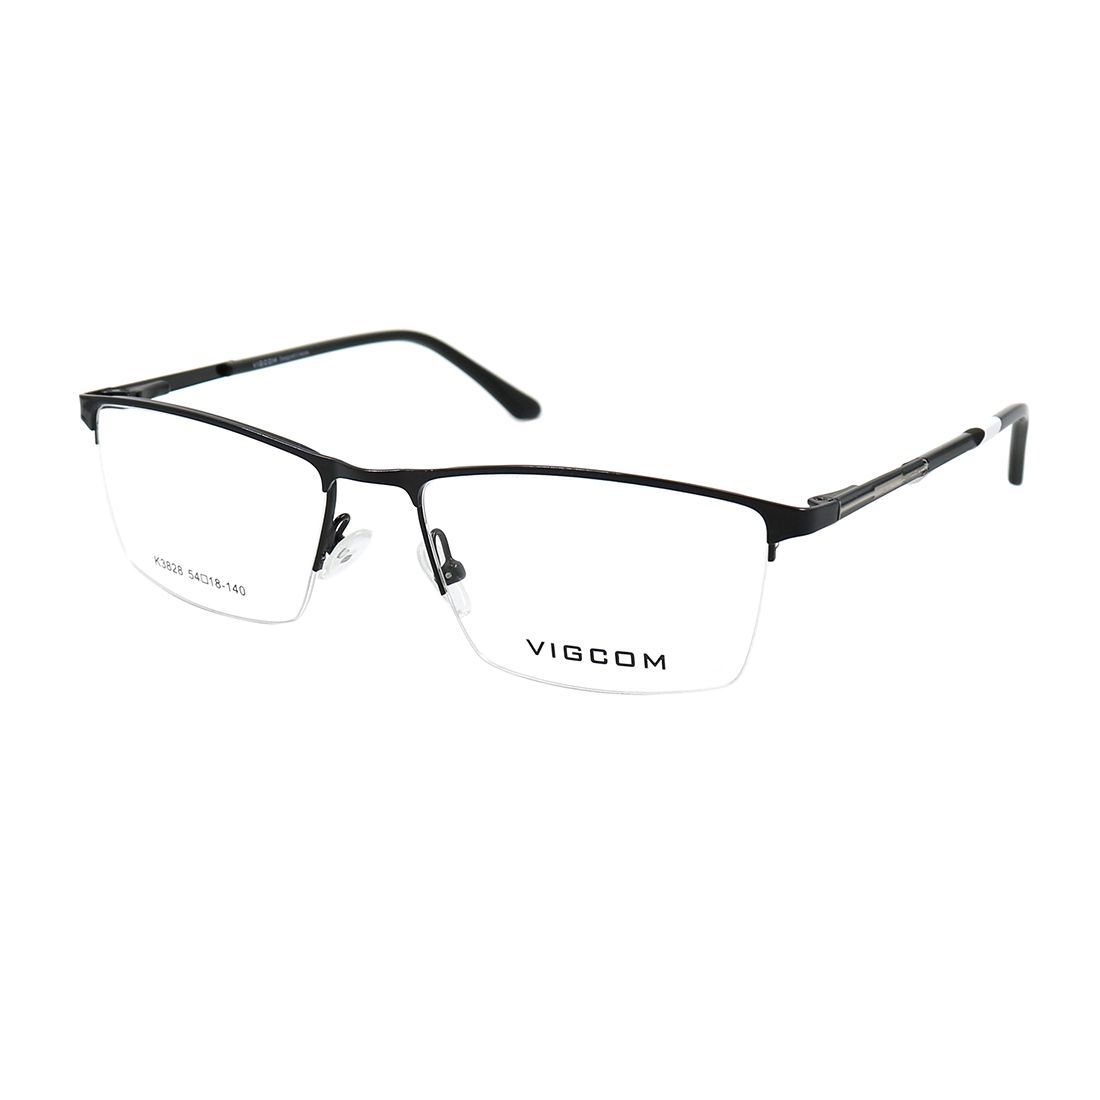  Gọng kính Vigcom VG3828 C1 